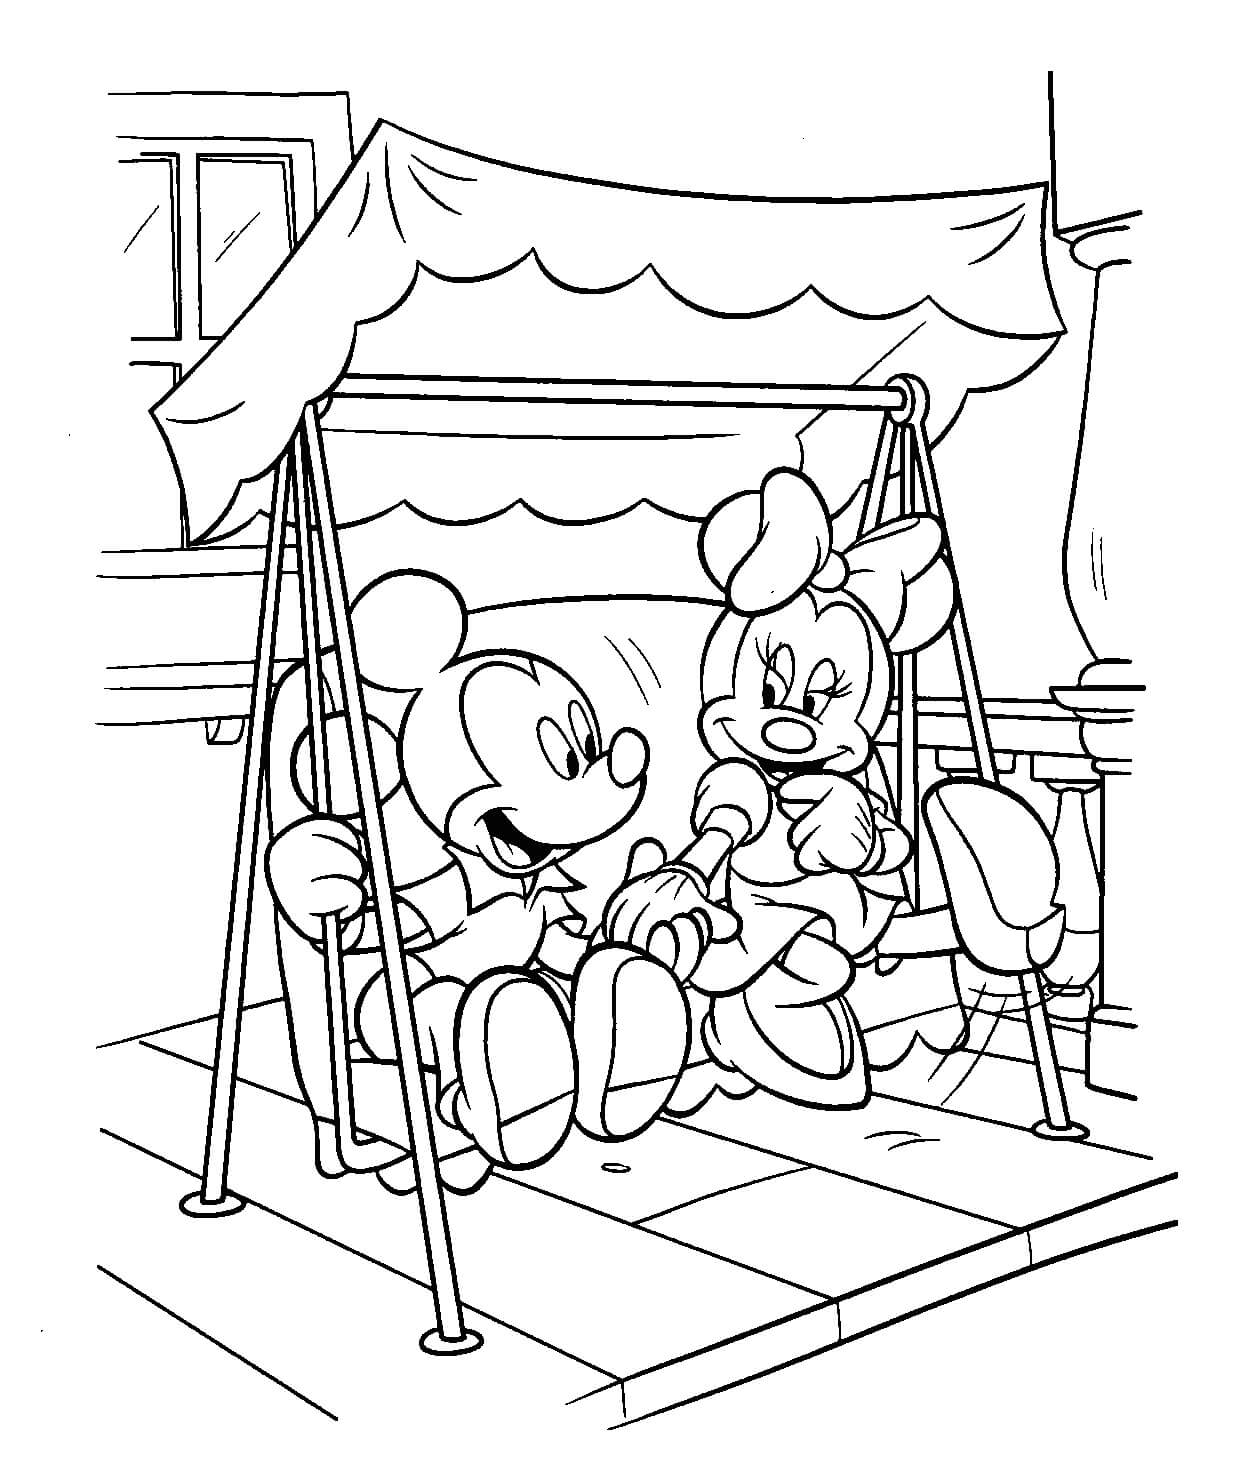 Desenhos de Mickey Mouse e Minnie Mouse Brincando nos Balanços para colorir